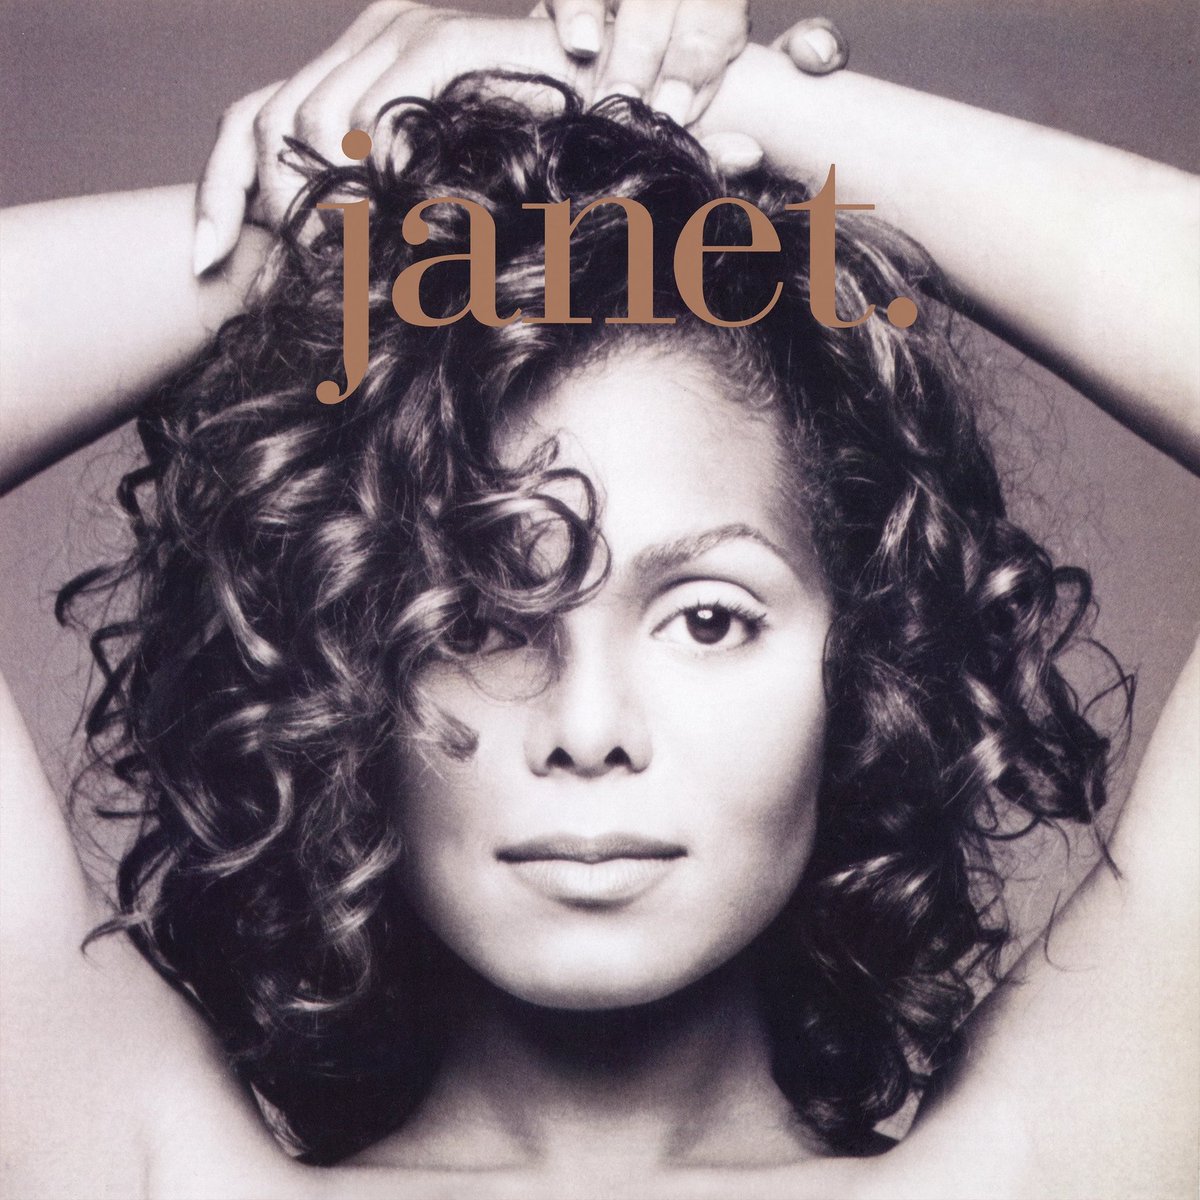 Janet Jackson lanzó “janet” hace 31 años (1993). Este quinto álbum fue el primero que publicó con Virgin Records, después de dejar A&M Records. Incluye los #1 That's the way love goes y Again; además, If, Because of love y Anytime, anyplace. Ha vendido 14 millones de copias.